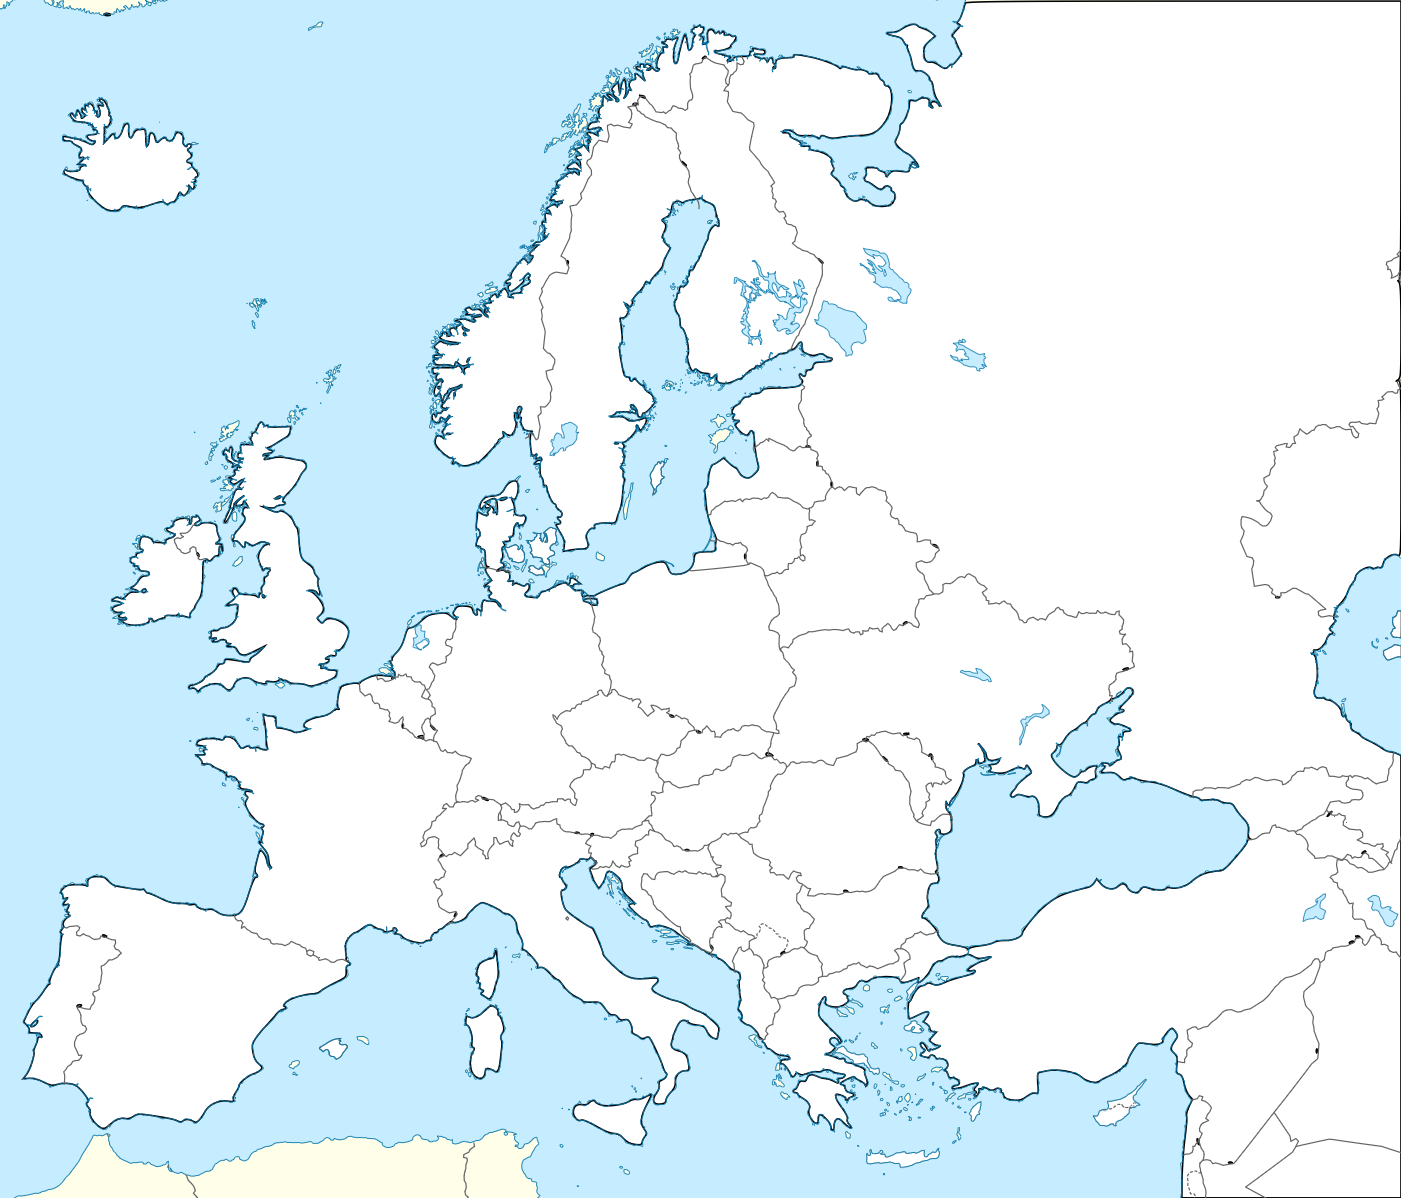 Práce s atlasem 1)do mapy zakreslete pojmy ze stránky 1+2 (povrch Evropy) 2) červeně vyznačte sopečné oblasti, modře evropské ledovce 3)zakreslete hranici čtvrtohorního zalednění a mořského ledu 4)